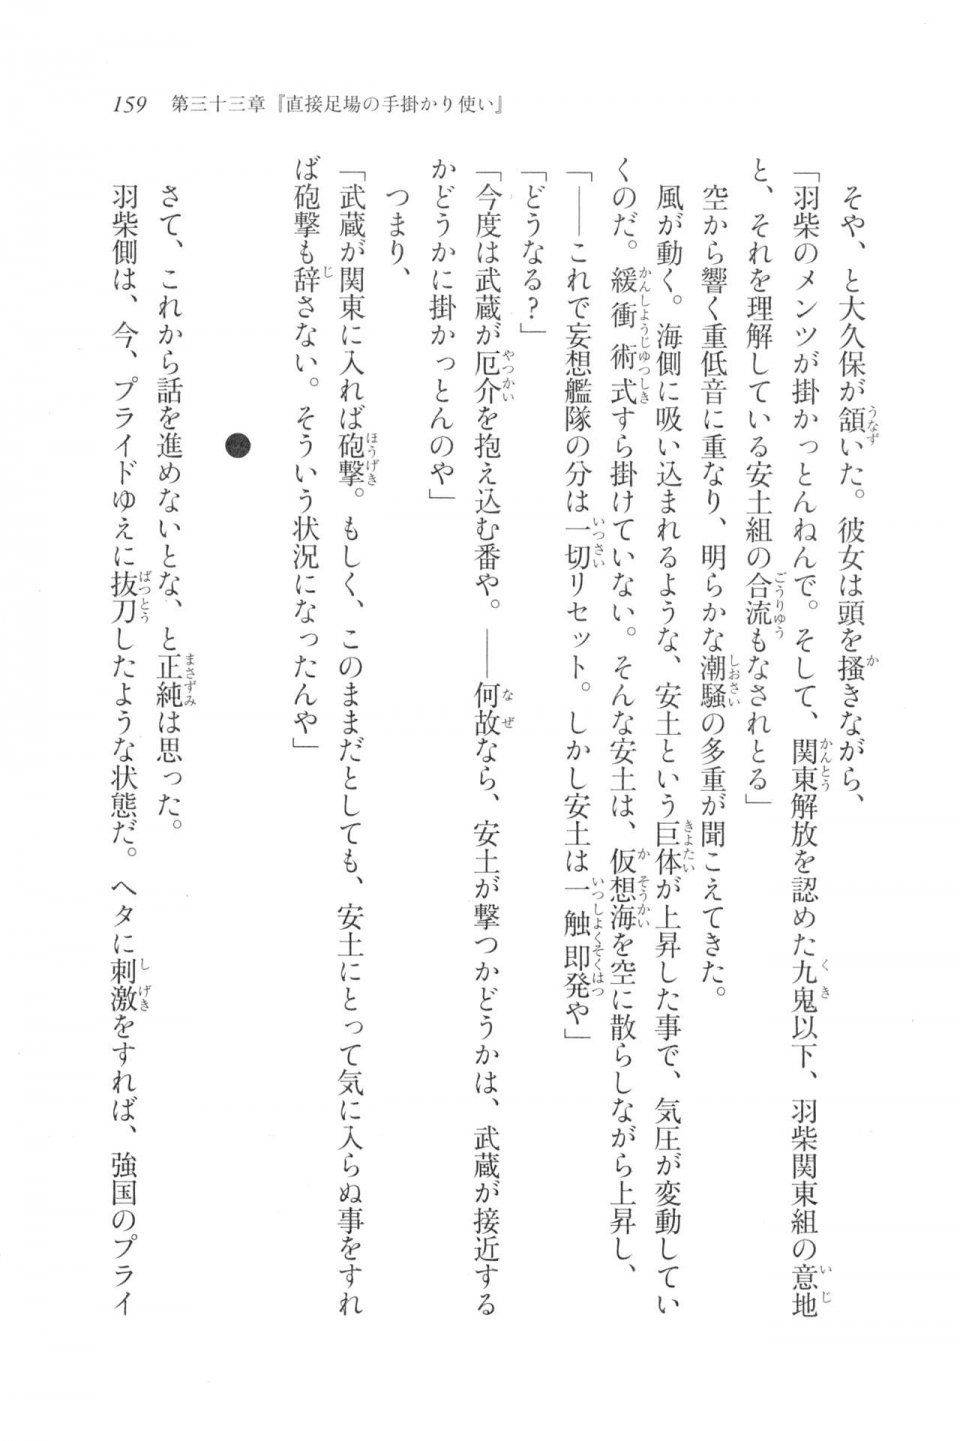 Kyoukai Senjou no Horizon LN Vol 20(8B) - Photo #159